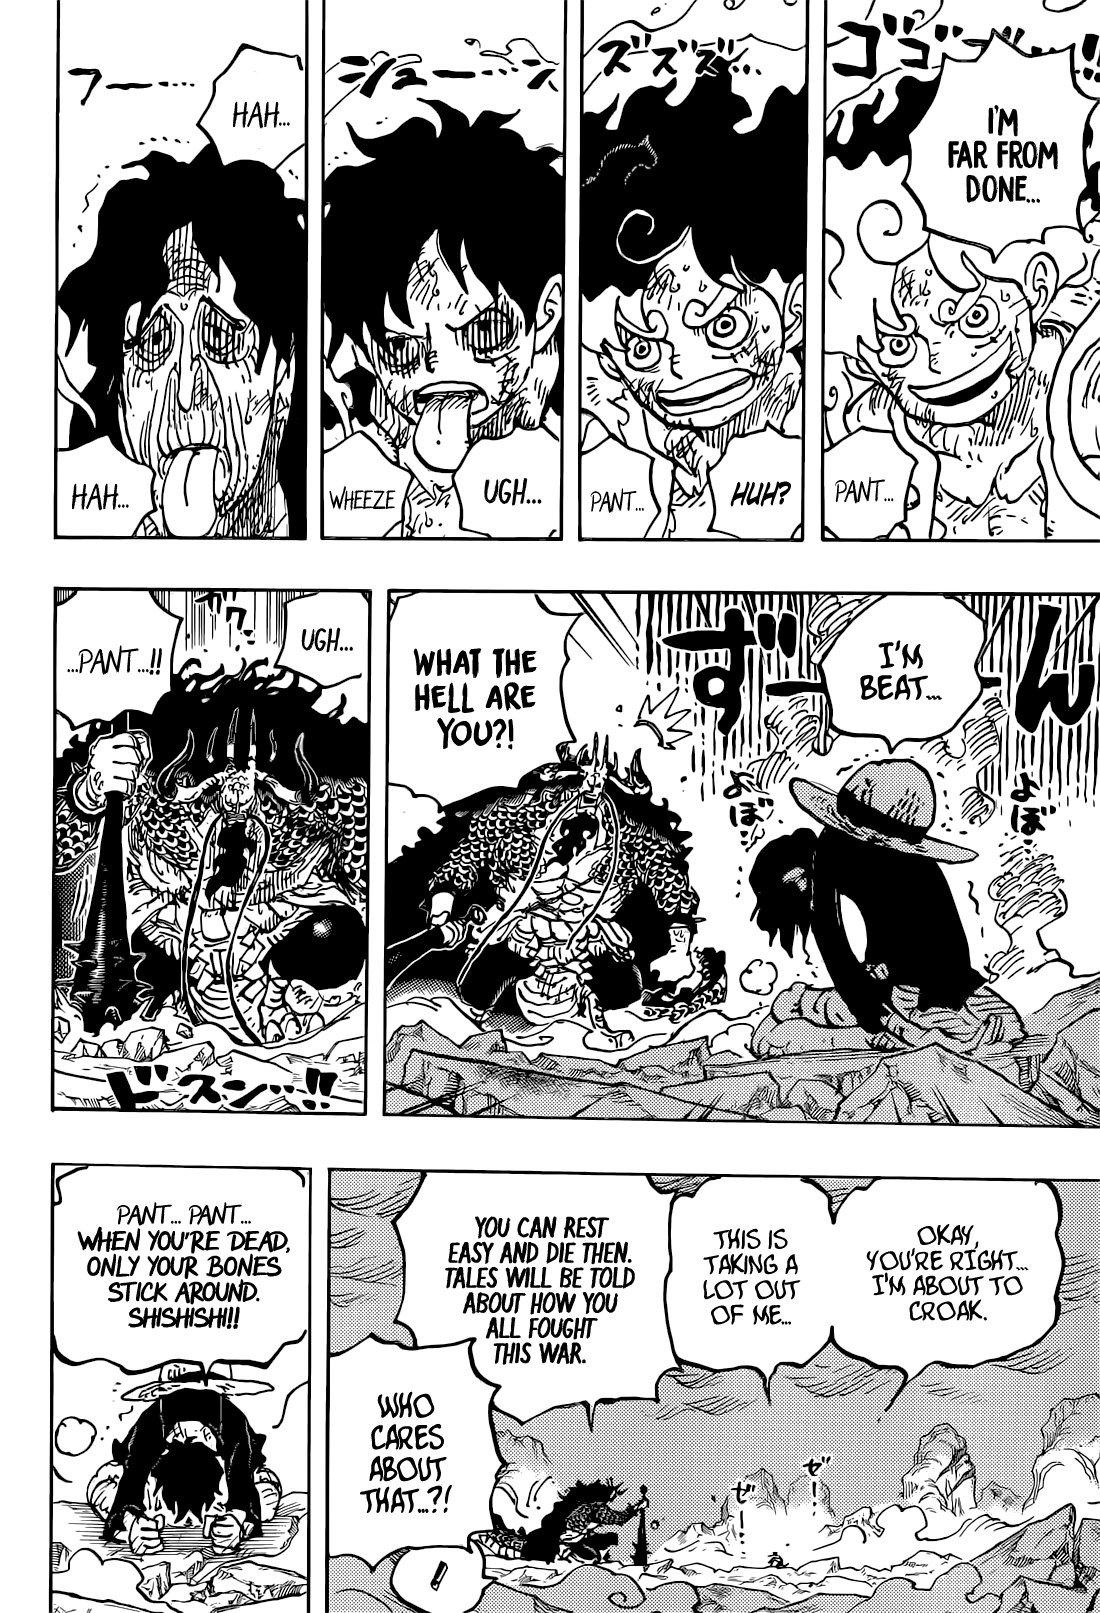 So sánh thức tỉnh trái ác quỷ: Nếu bạn là fan của One Piece, không thể bỏ qua hình ảnh so sánh sức mạnh khi Luffy thức tỉnh trái ác quỷ. Xem những kỹ năng và sức mạnh sánh đôi của Luffy với các nhân vật khác, đặc biệt là các tướng lĩnh của Thiên Long Bát Bộ.